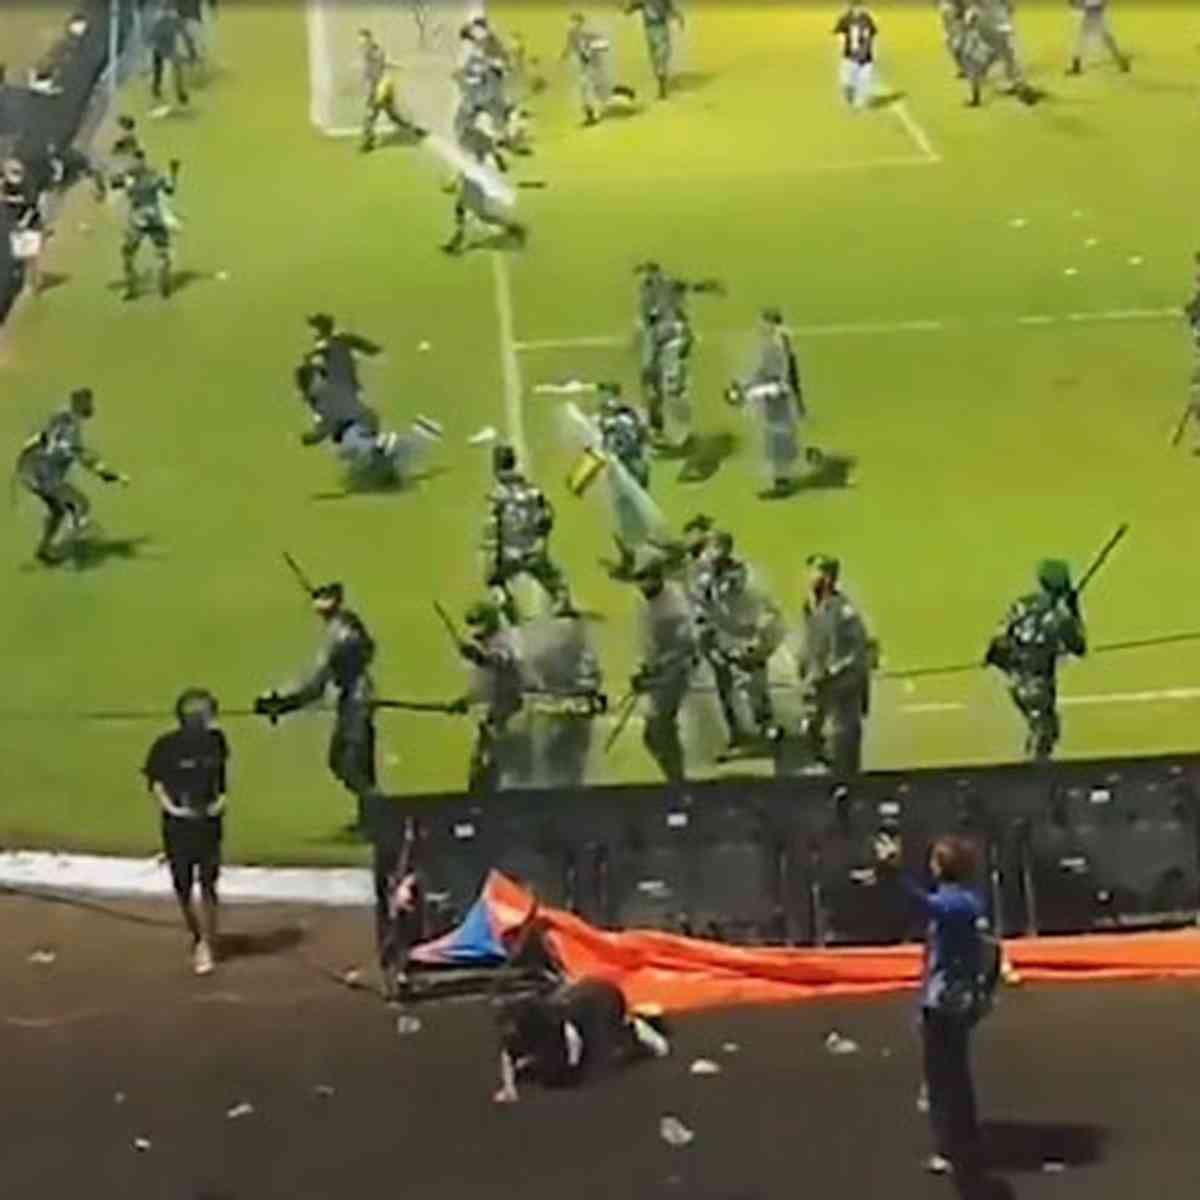 Revolta e revanche: Argentina e Chile 'salvam' a disputa em Itaquera -  Placar - O futebol sem barreiras para você